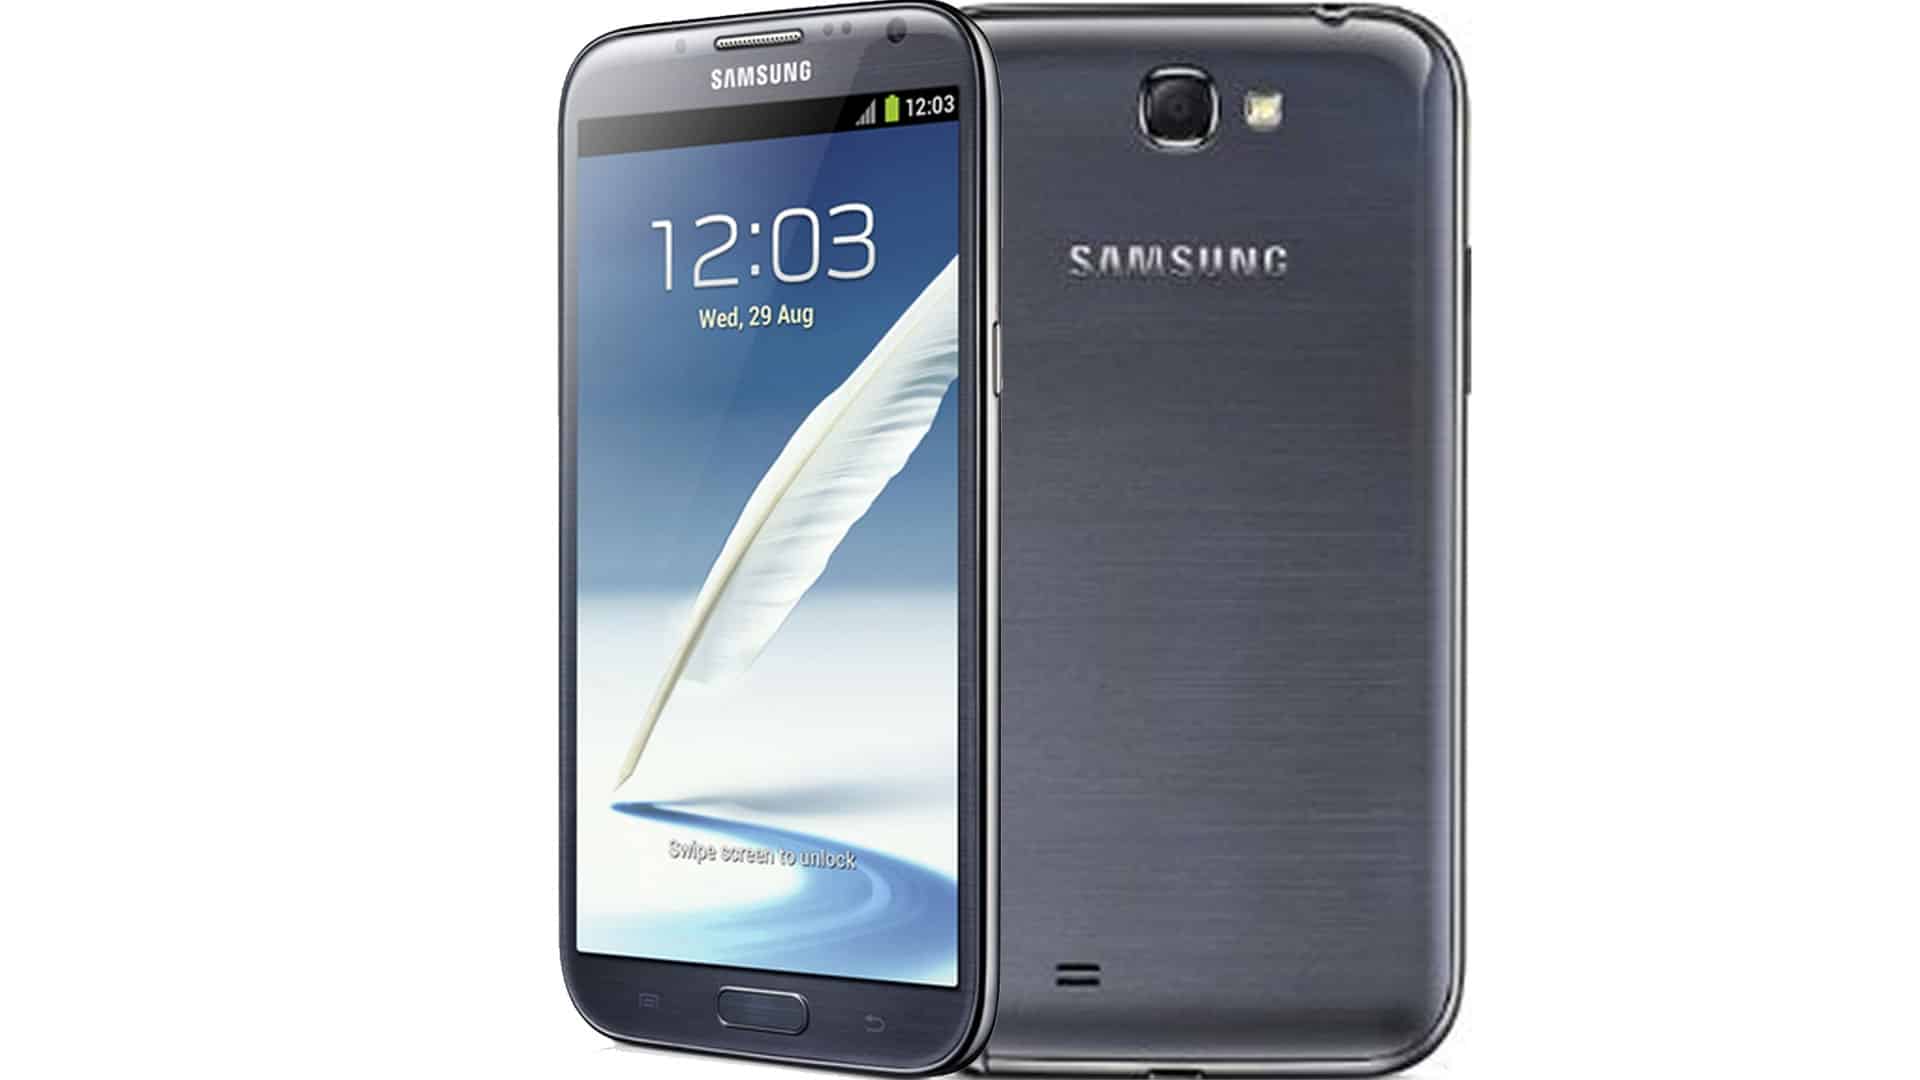 Samsung-Galaxy-Note-2-fronte-retro-MisterGadget-Tec